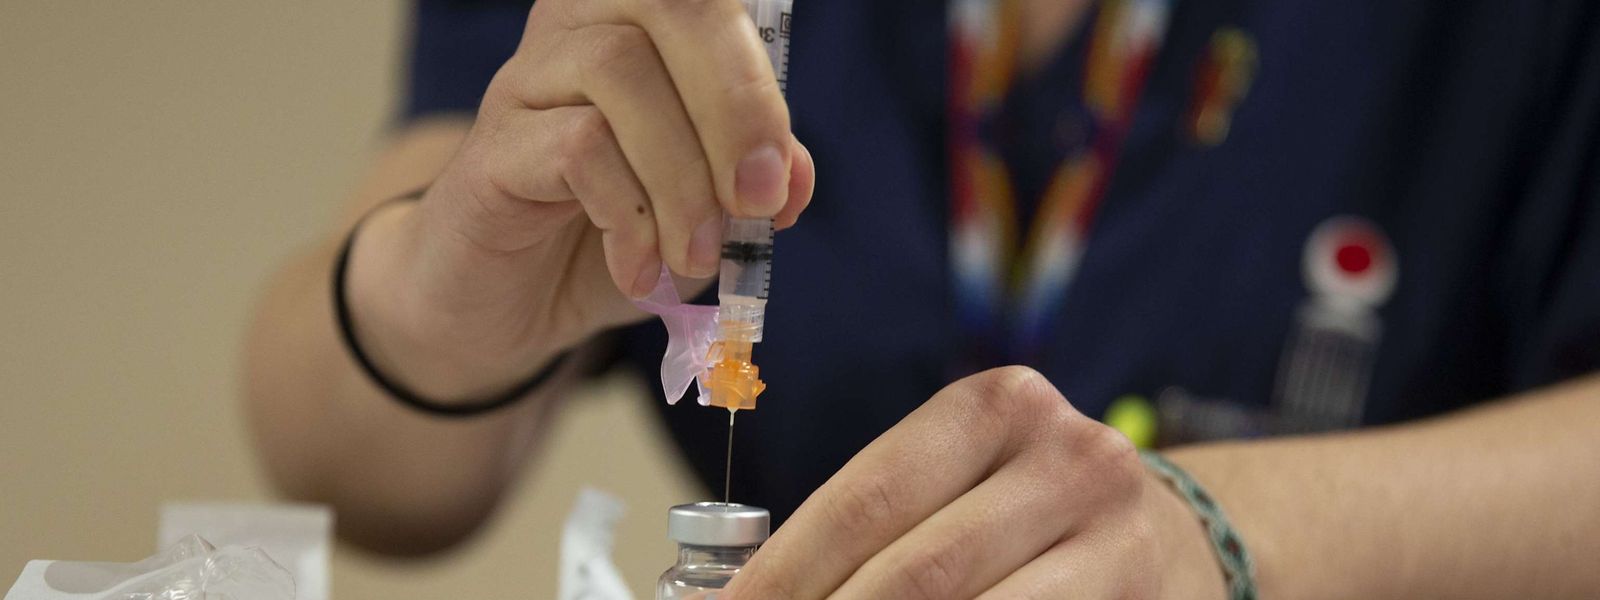 Le vaccin Pfizer/BioNTech sera le premier à être injecté, mais dans les mois à venir d'autres compositions pourront être validées par l'Agence européenne des médicaments.